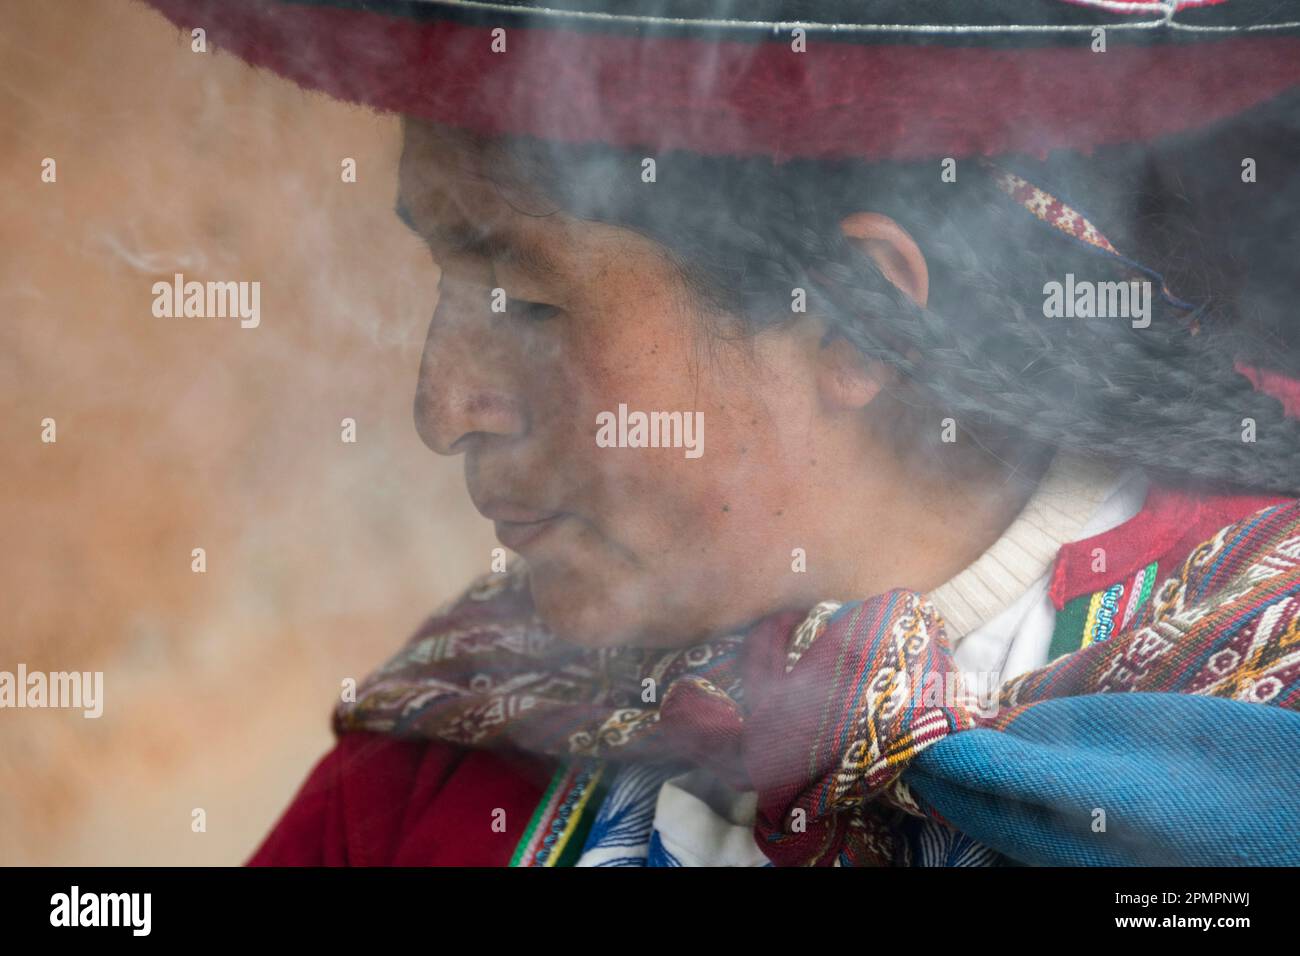 Femme péruvienne brûlant des plantes dans le cadre de l'extraction de colorants au Centre pour les textiles traditionnels ; district de Chinchero, Pérou Banque D'Images